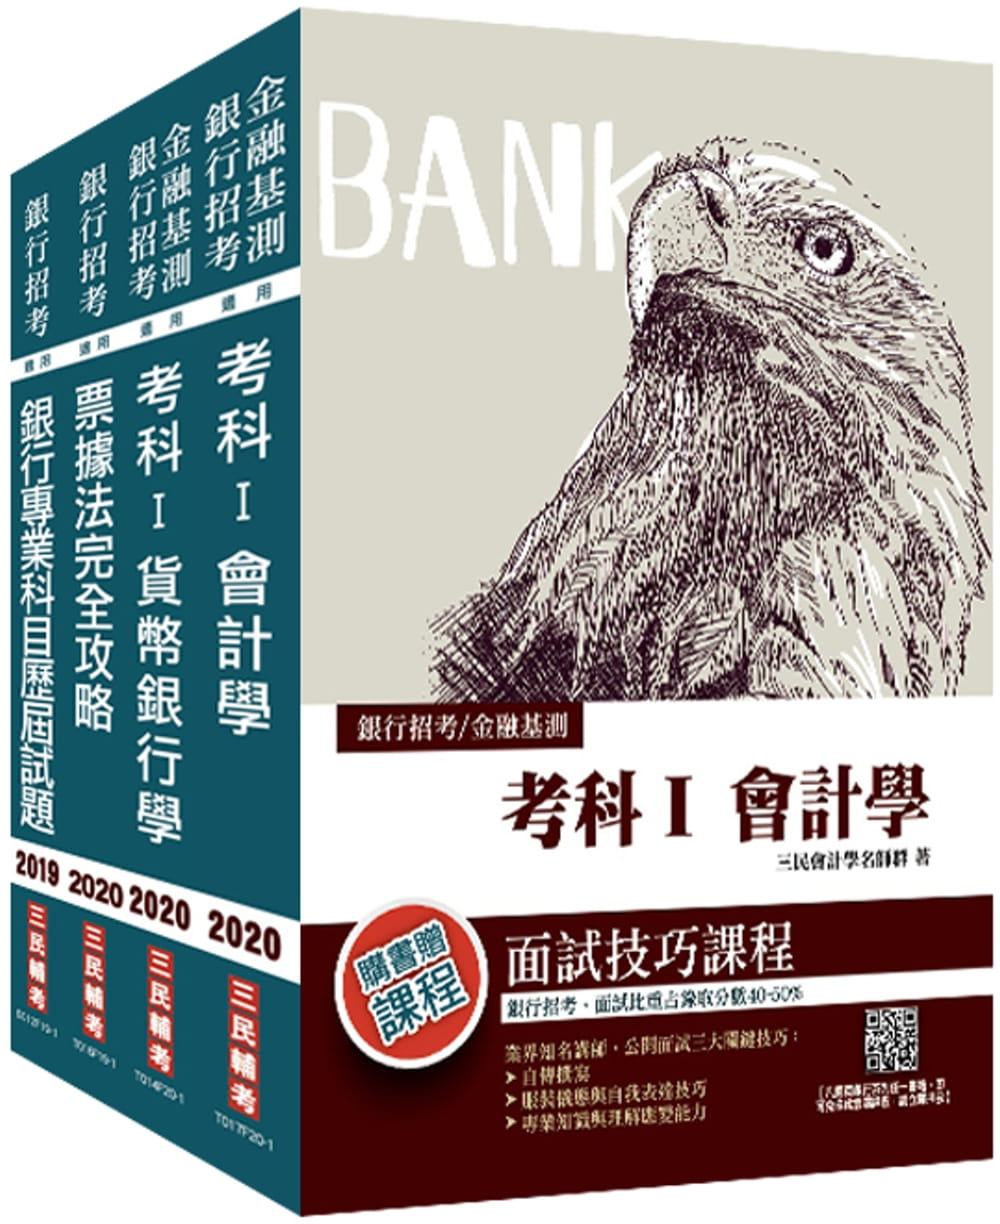 2020年臺灣銀行[一般金融人員][專業科目]套書(贈銀行專業科目歷屆試題)